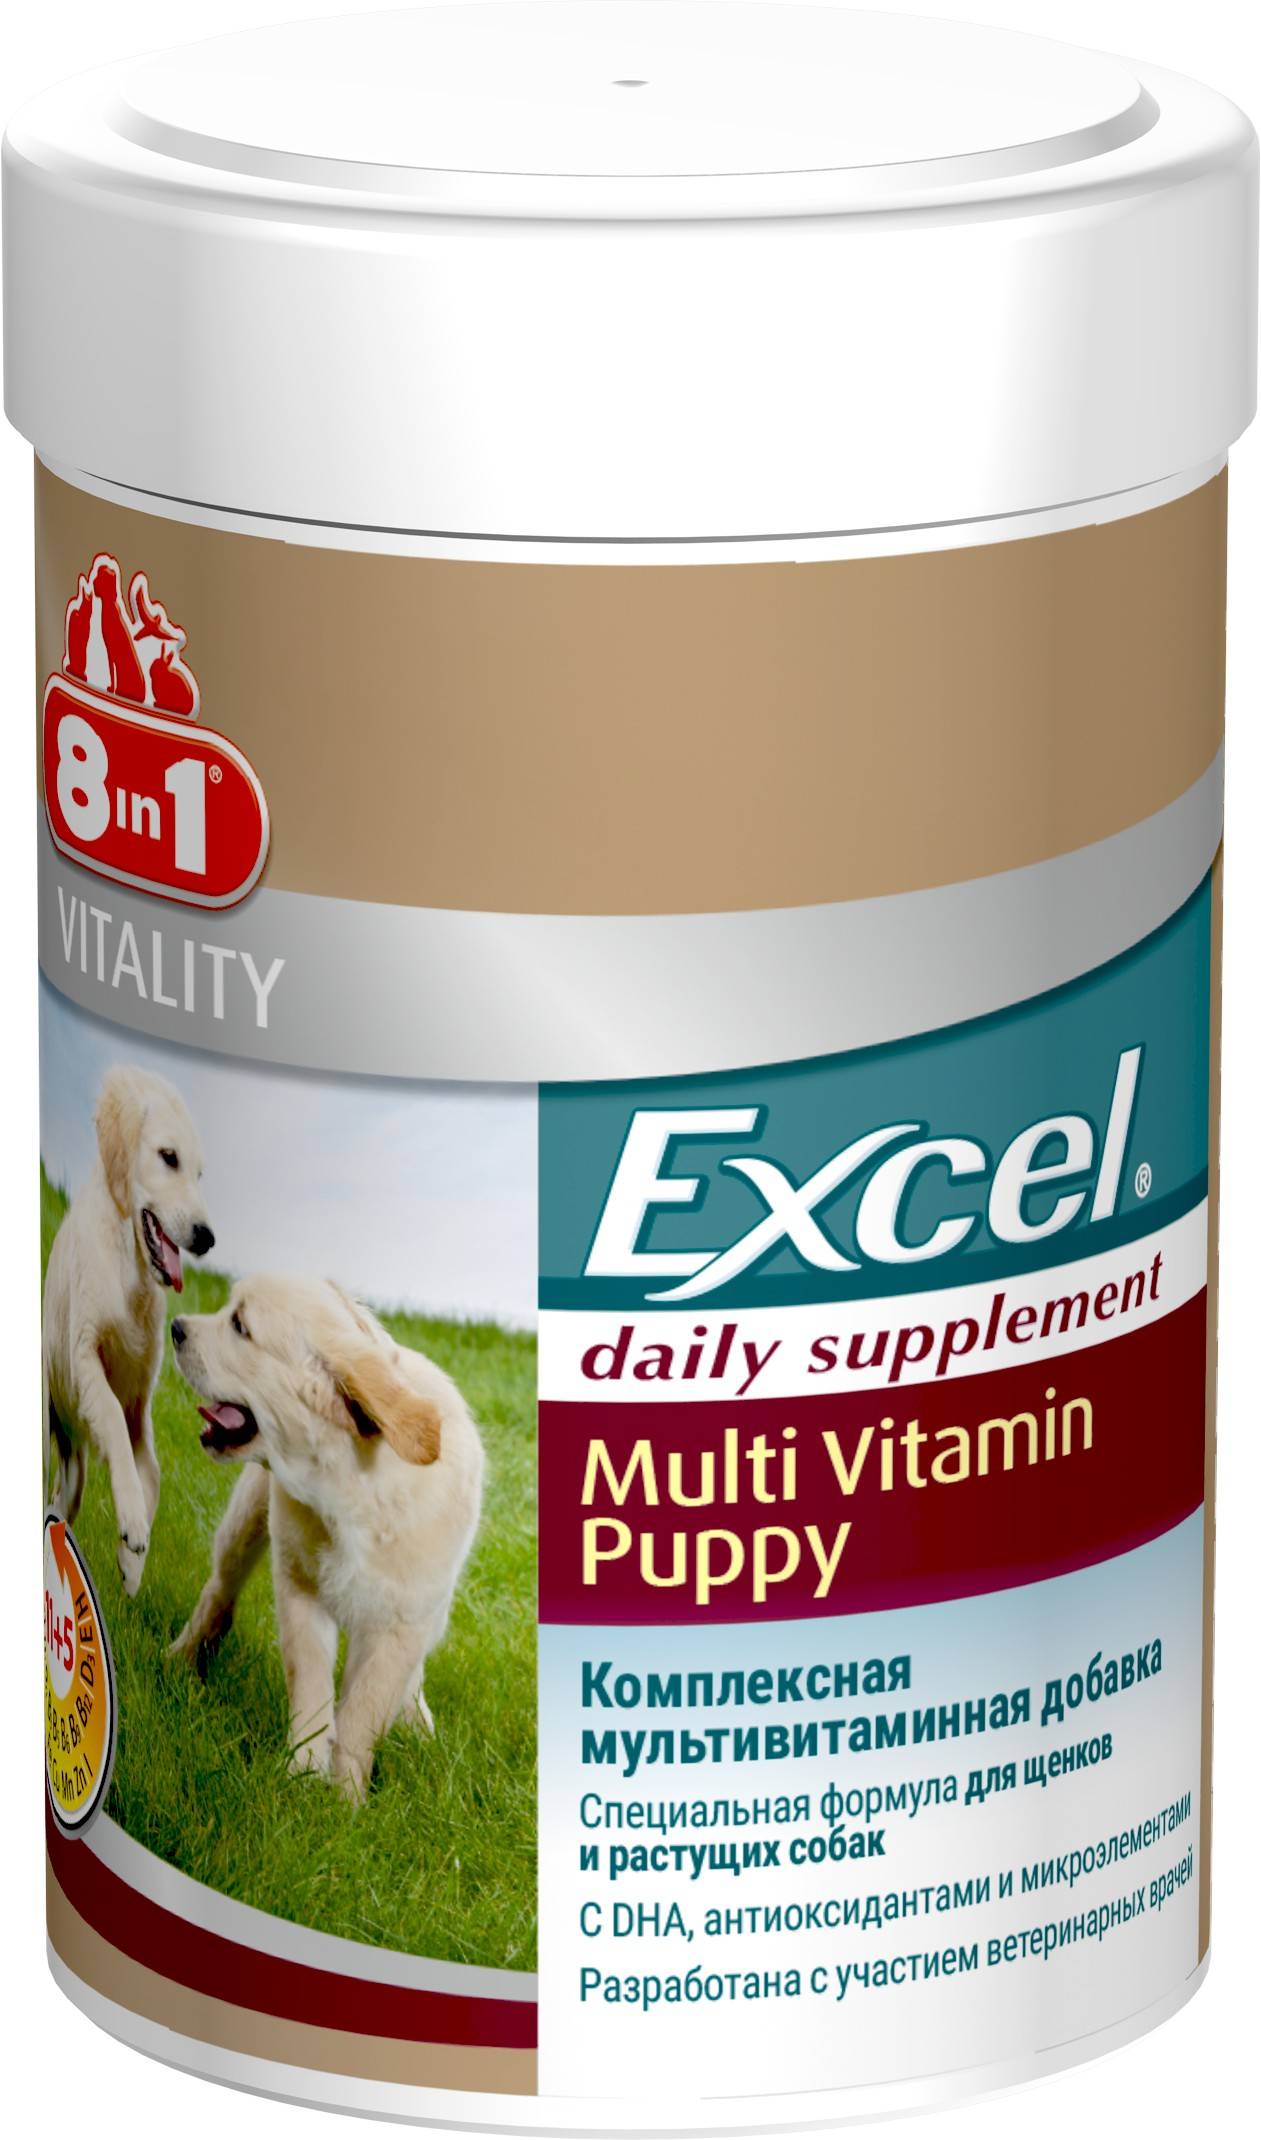 8in1 Excel Multi-Vitamin Puppy – комплексная мультивитаминная добавка для щенков